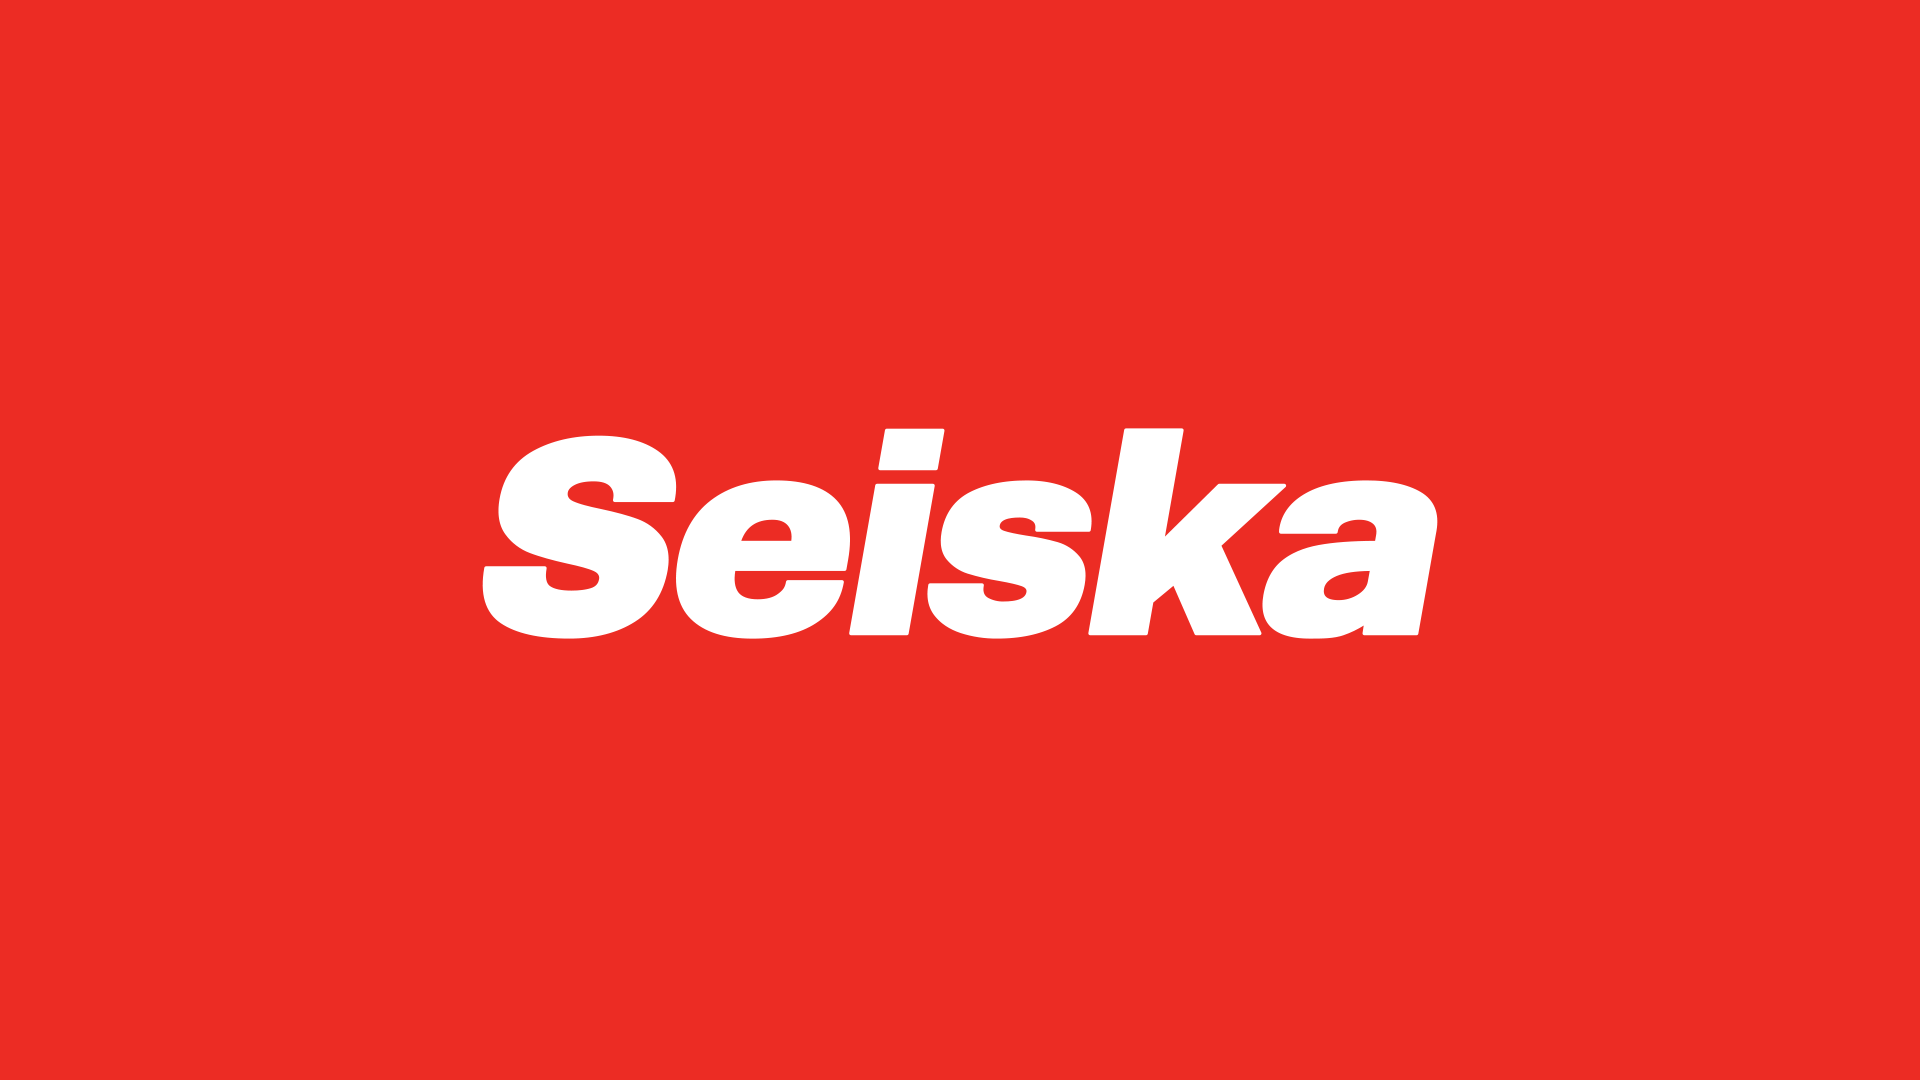 www.seiska.fi